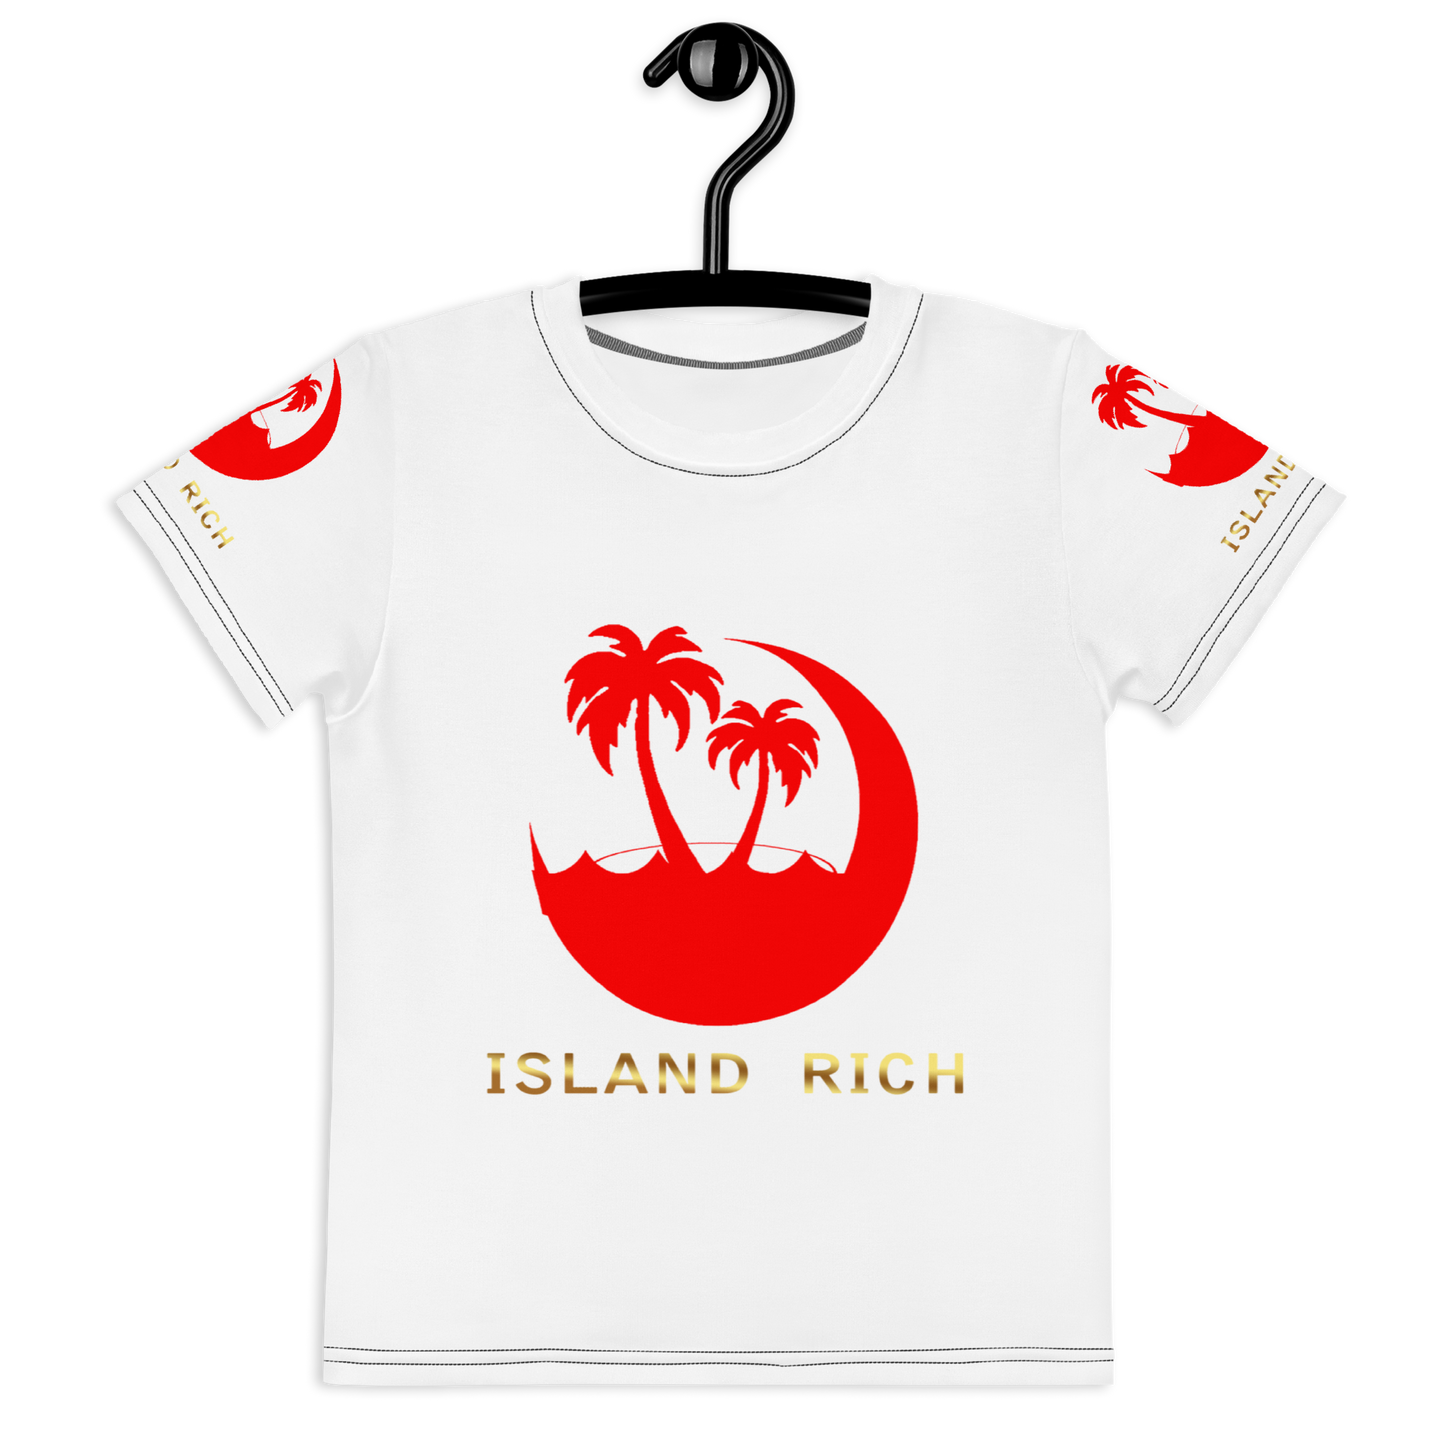 Islandrich Kids crew neck t-shirt